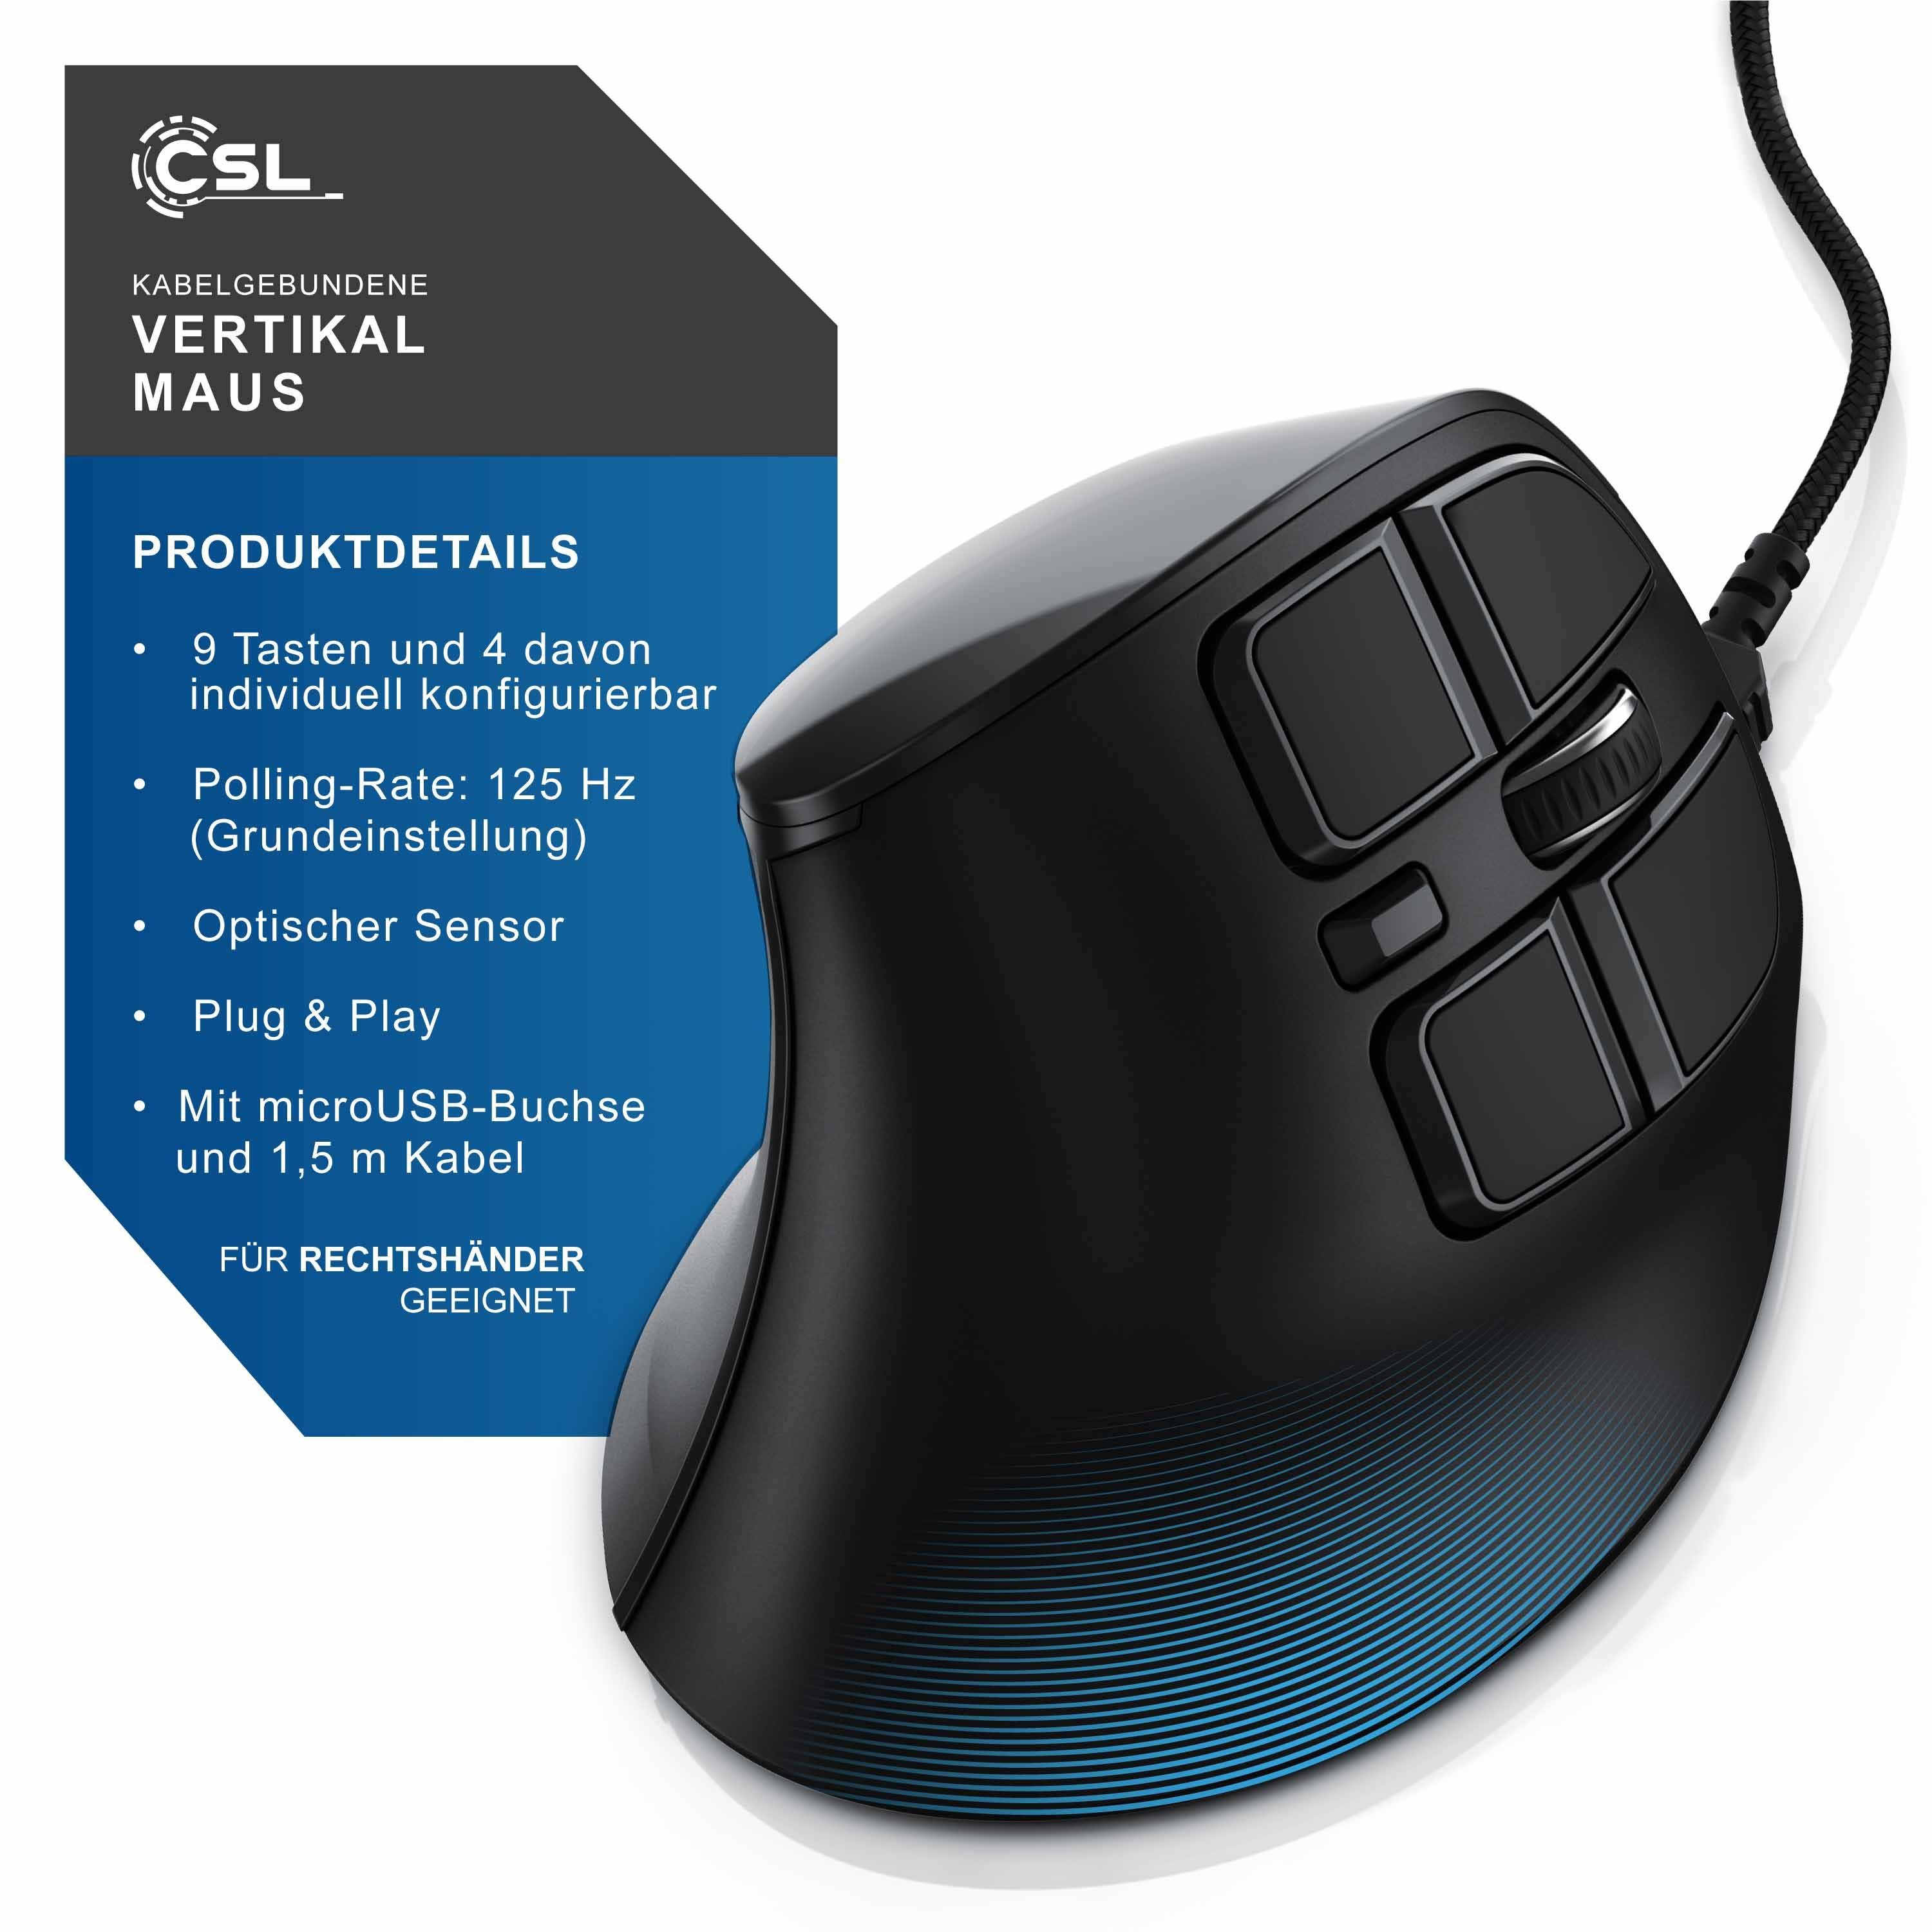 CSL ergonomische mit OLED-Display Maus Konfigurierbare kabelgebunden Tasten) dpi, (kabelgebunden, 125 Maus Vertikal